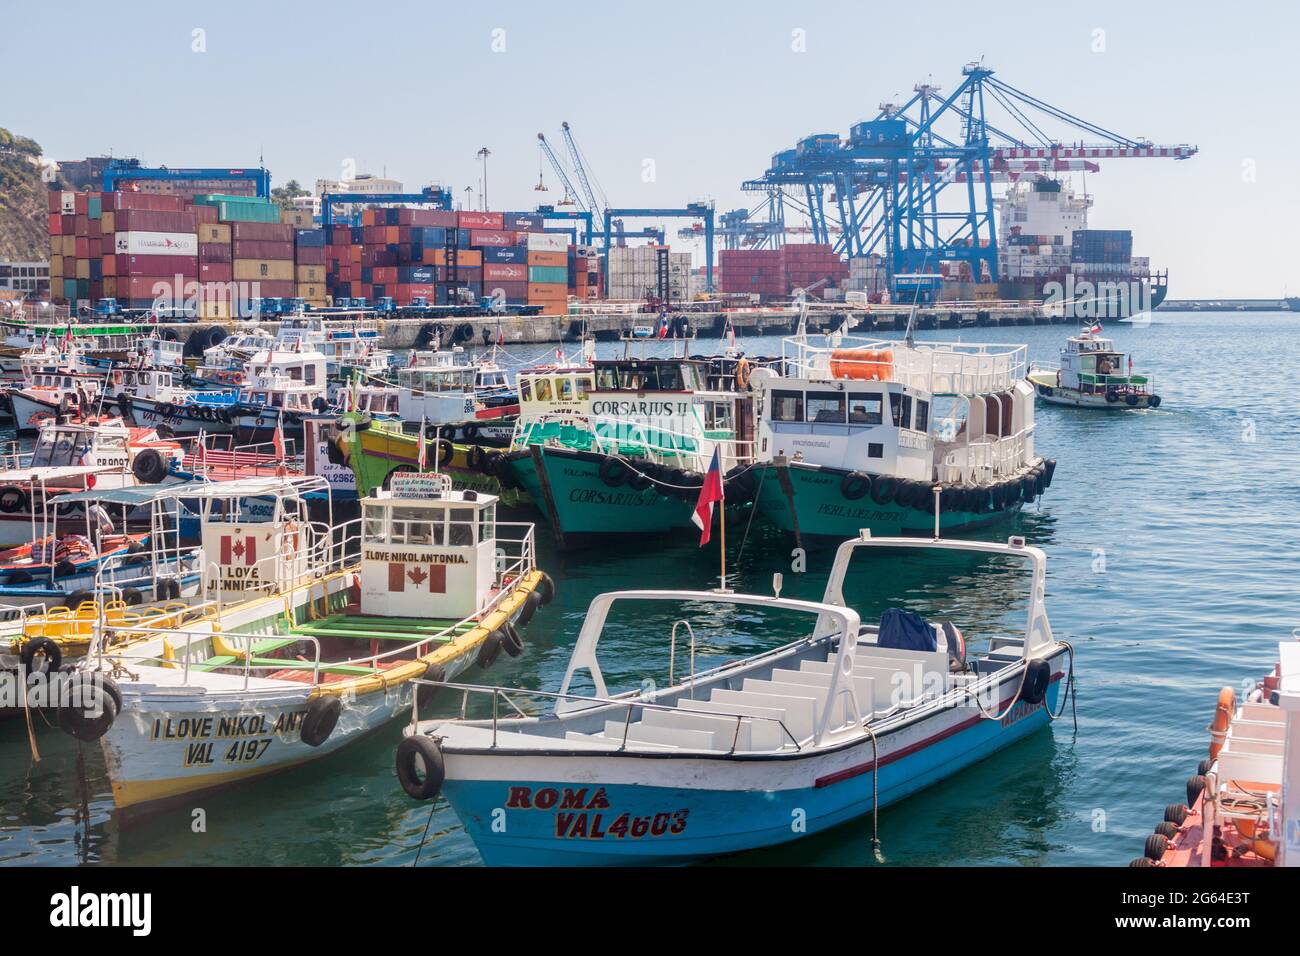 VALPARAISO, CHILE - 29. MÄRZ 2015: Boote und Kraniche in einem Hafen von Valparaiso, Chile Stockfoto